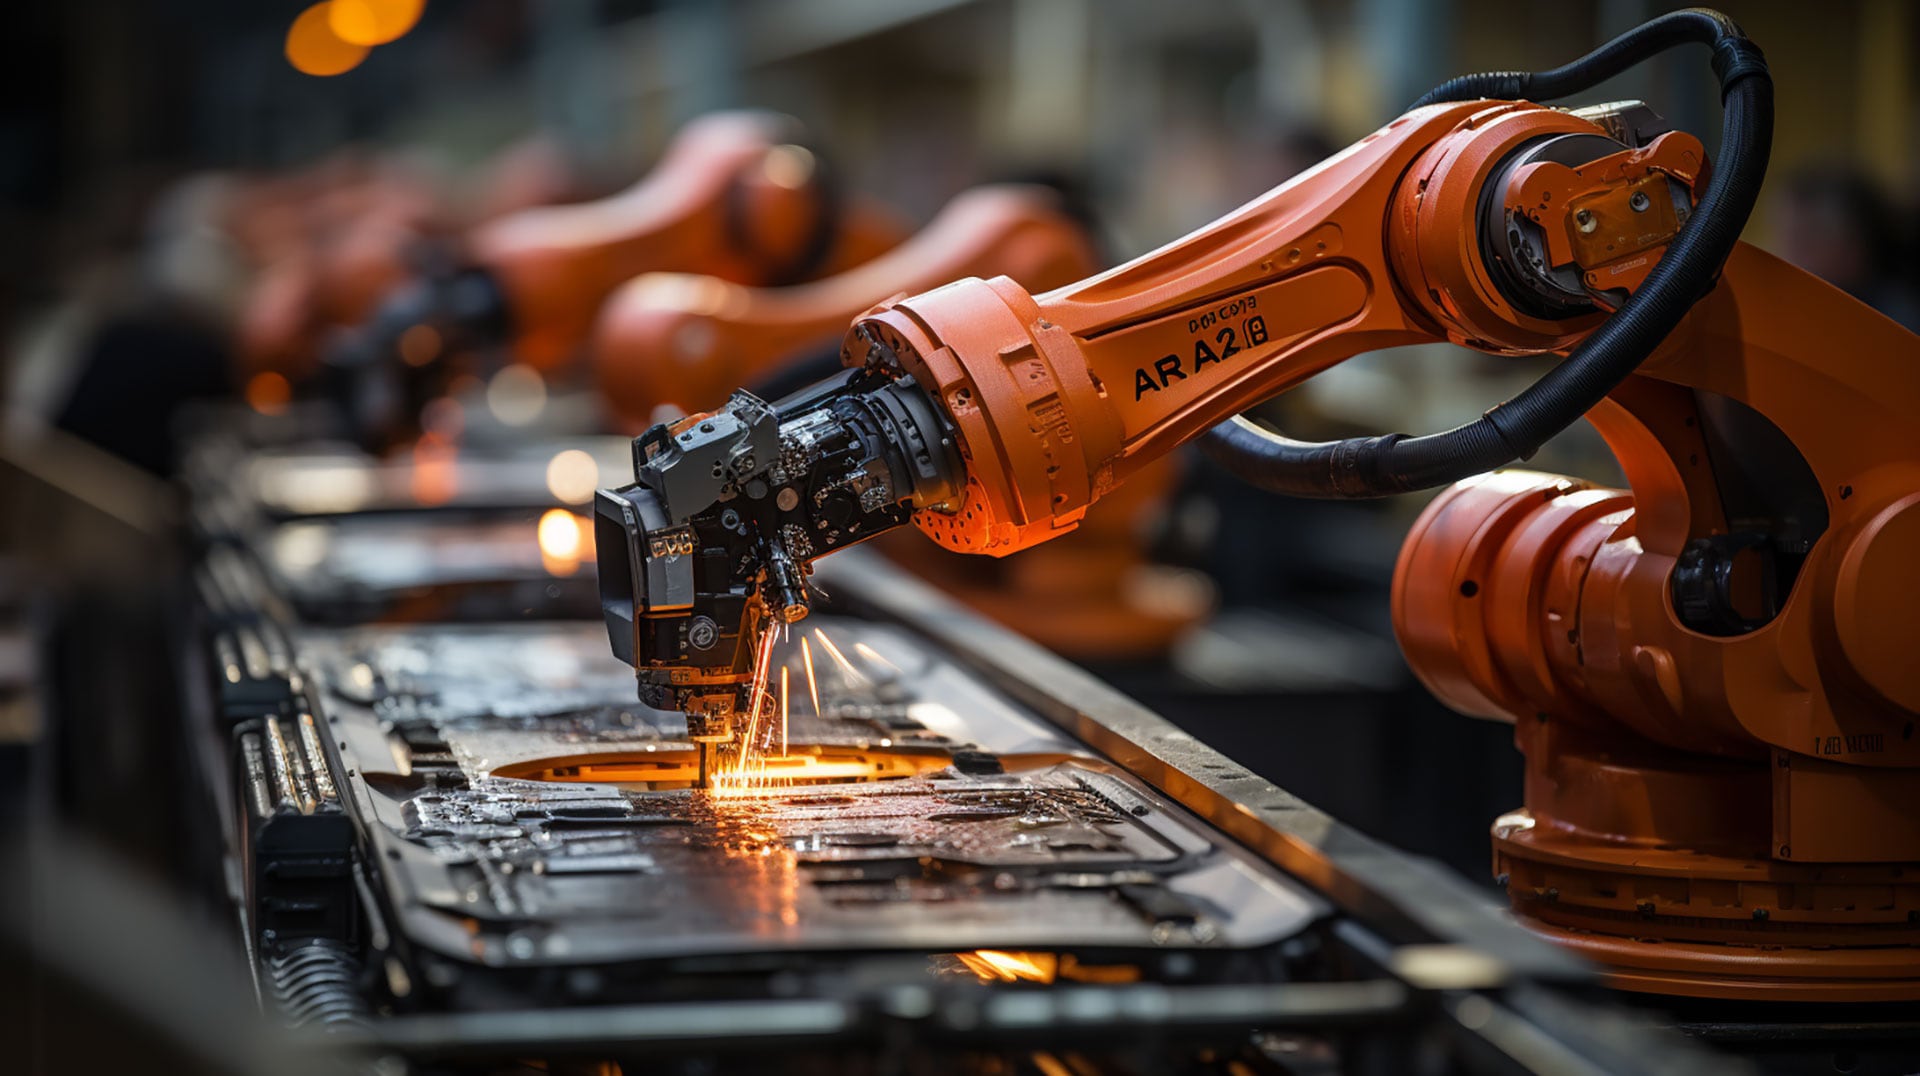 Imagen representativa de robots y sistemas de inteligencia artificial en diversos sectores, desde logística hasta gastronomía, ilustrando la transformación y adaptación del mercado laboral ante la creciente automatización.